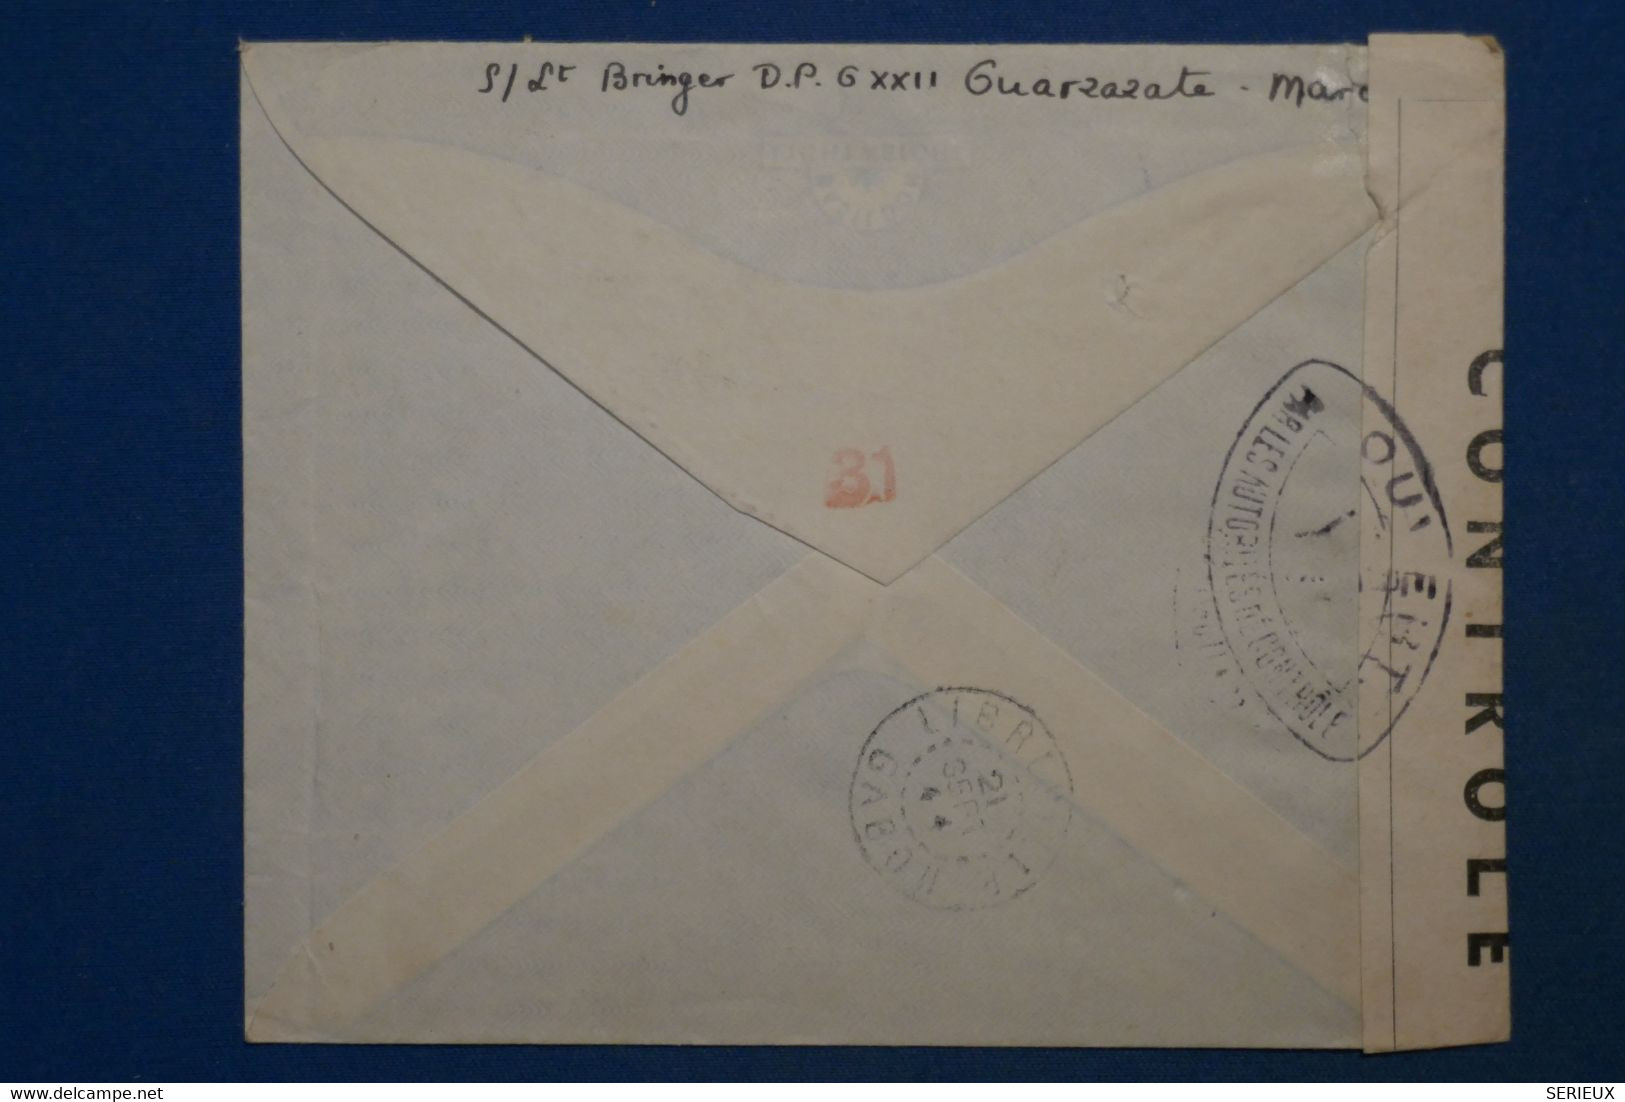 AK6 MAROC  BELLE LETTRE  CENSUREE   1944 MARRAKESH POUR   LIBREVILLE GABON  ++AEROPHILATELIE++AFFR. INTERESSA NT - Covers & Documents